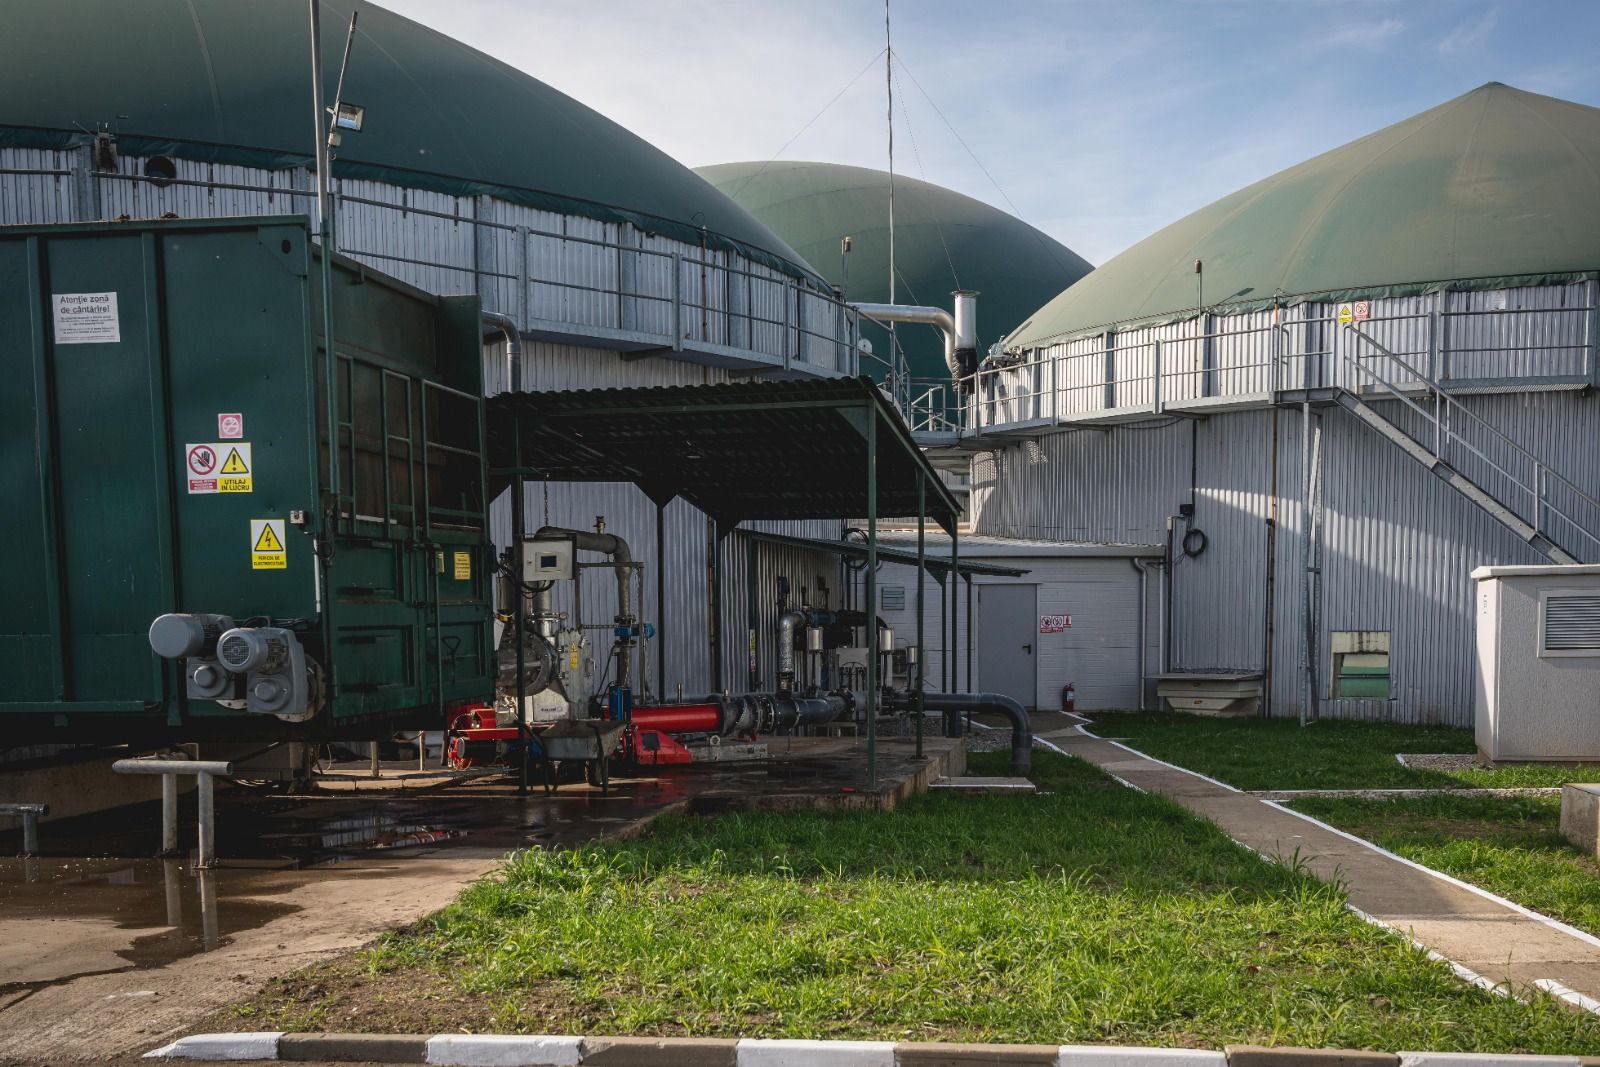 Genesis Bio1 biogas plant, at full capacity